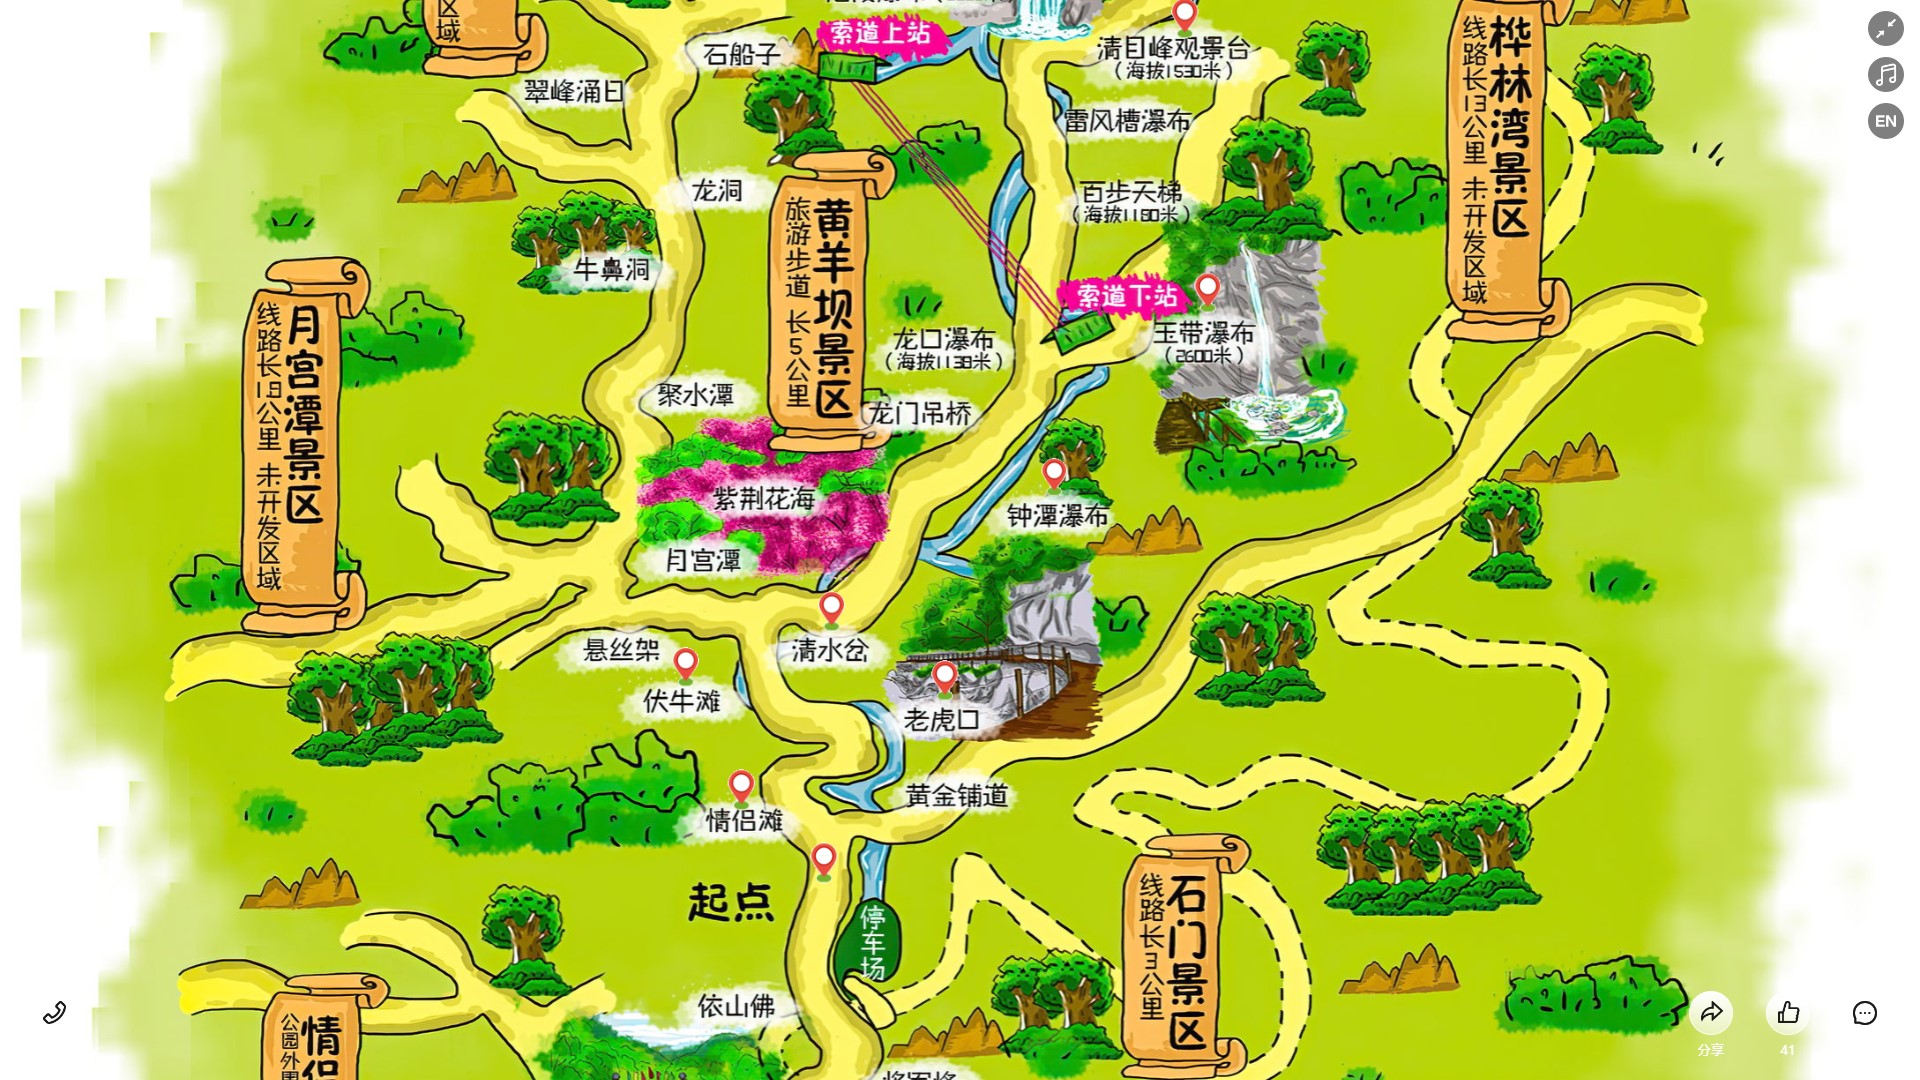 松江陕西太平
森林公园